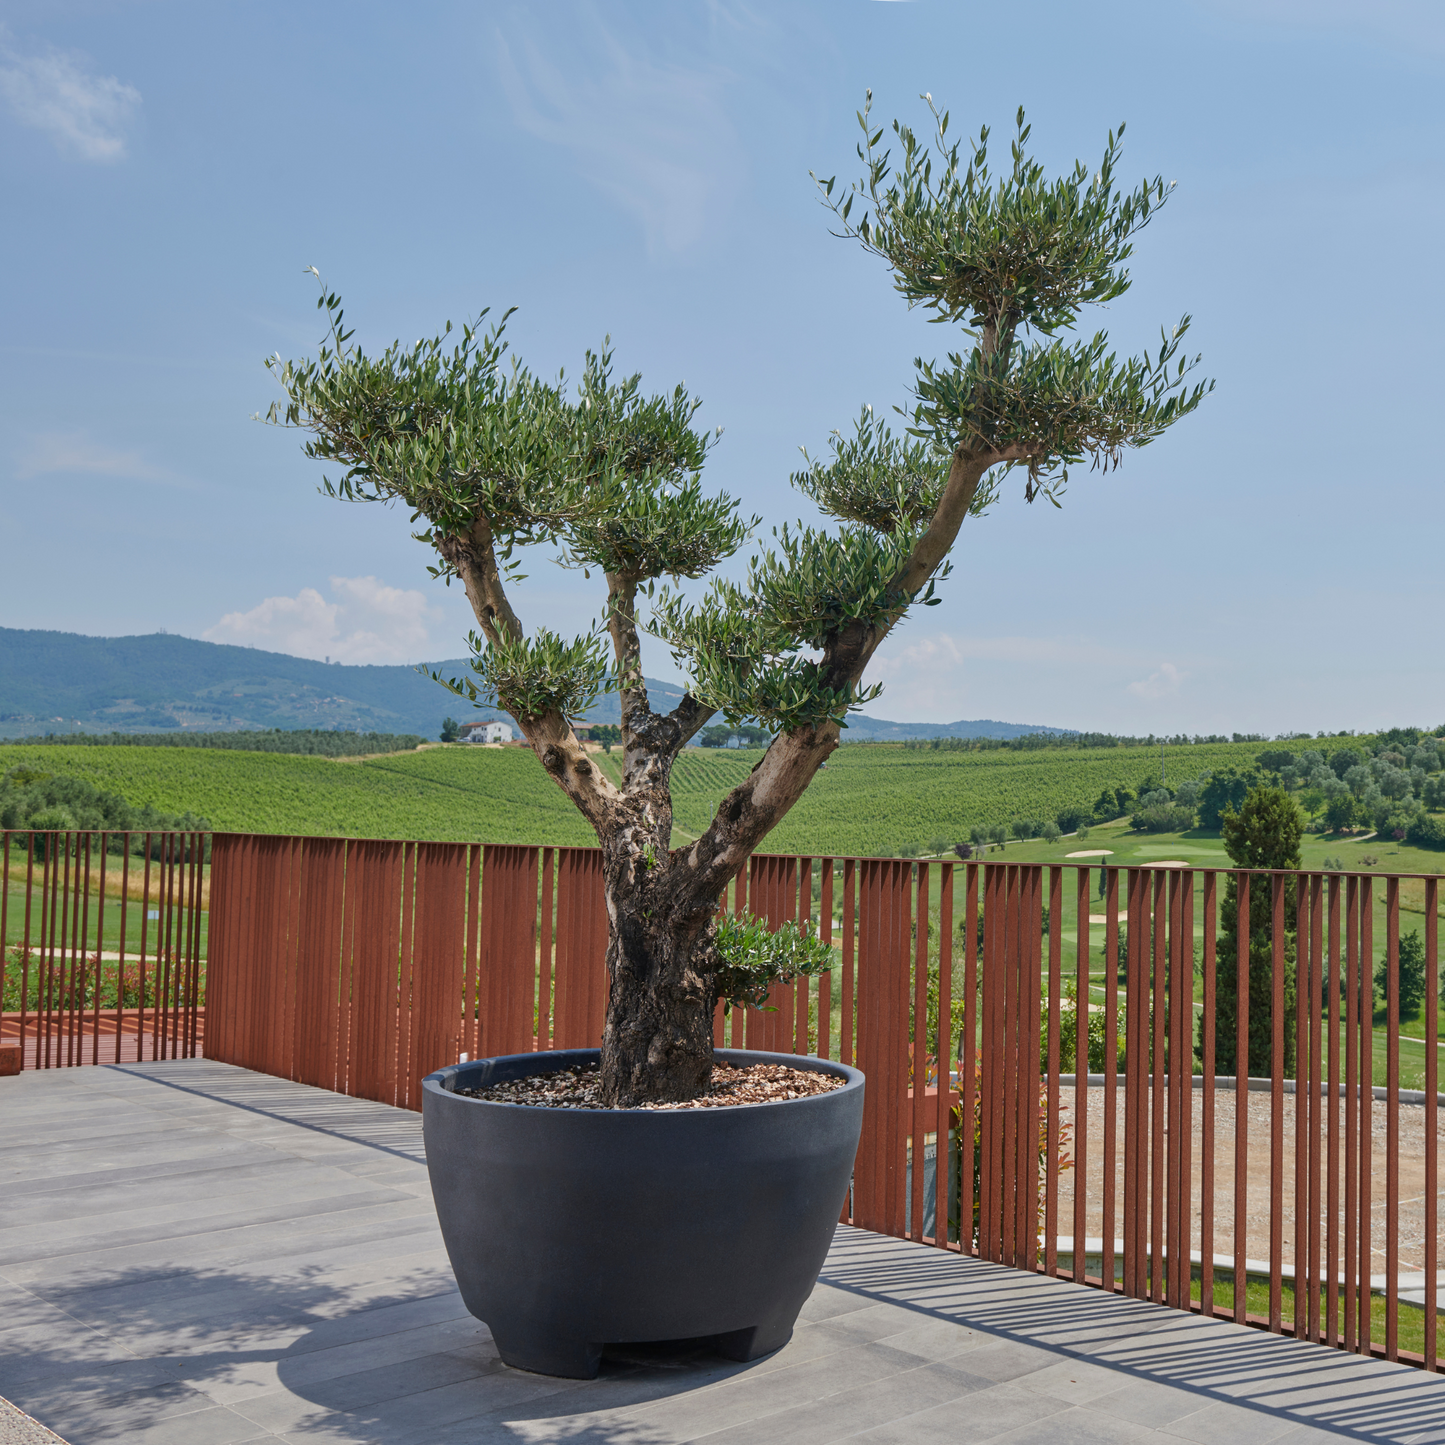 Produktbild staplerfahrbarer mobiler XXL-Topf für große Pflanzen von Gardapura, bepflanzt mit einem großen Olivenbaum auf einer Terrasse vor einer mediterranen Landschaft. Pflanztopf hier in Anthrazit.